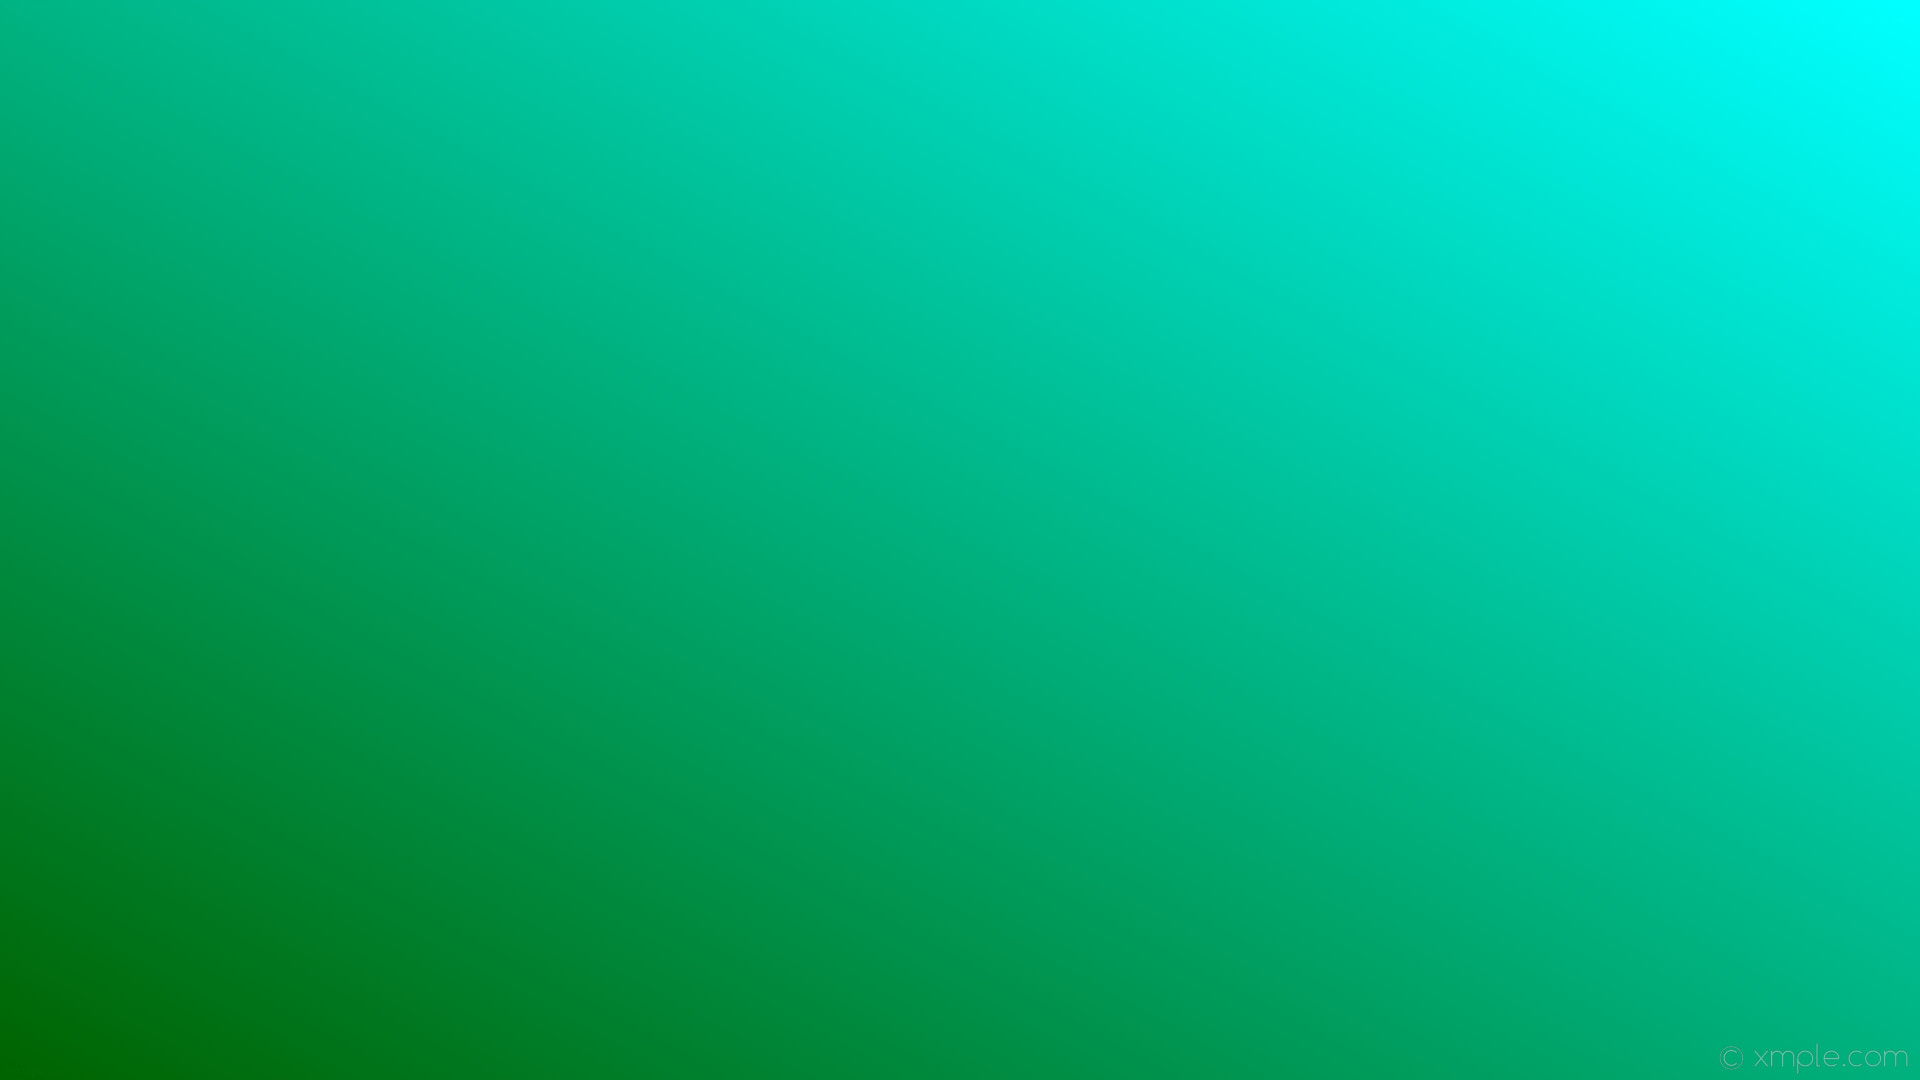 1920x1080 wallpaper gradient linear green blue dark green aqua cyan #006400 #00ffff  210Â°